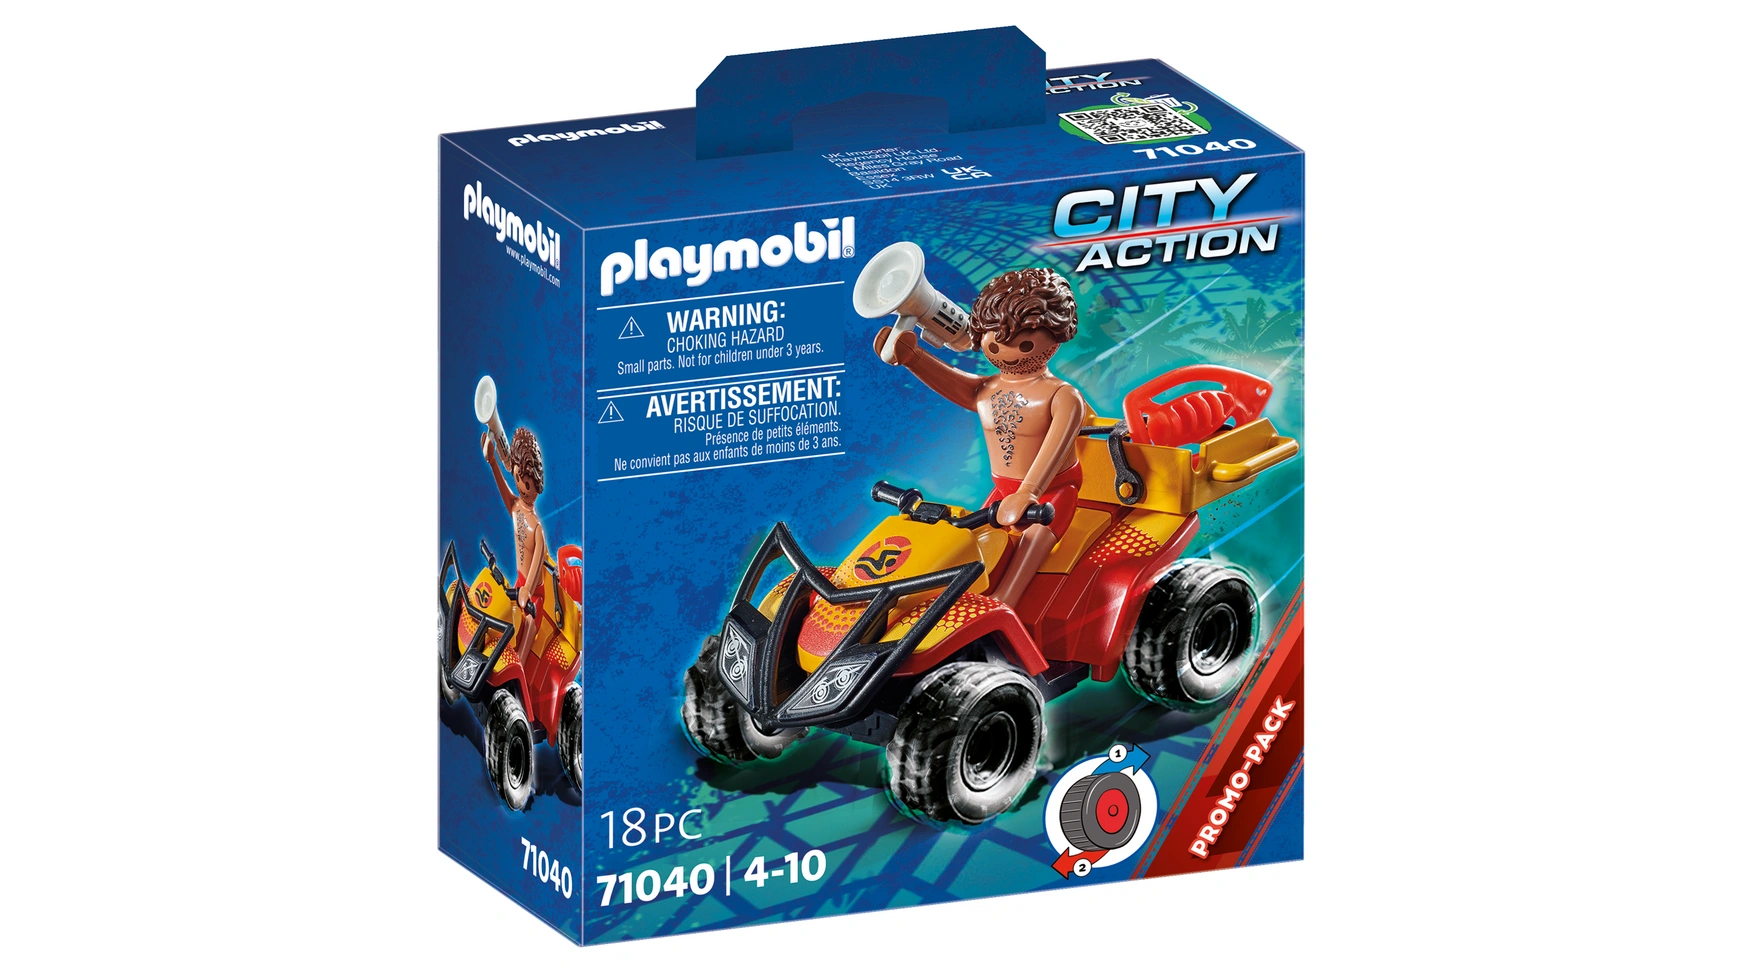 цена City action квадроцикл спасателя Playmobil